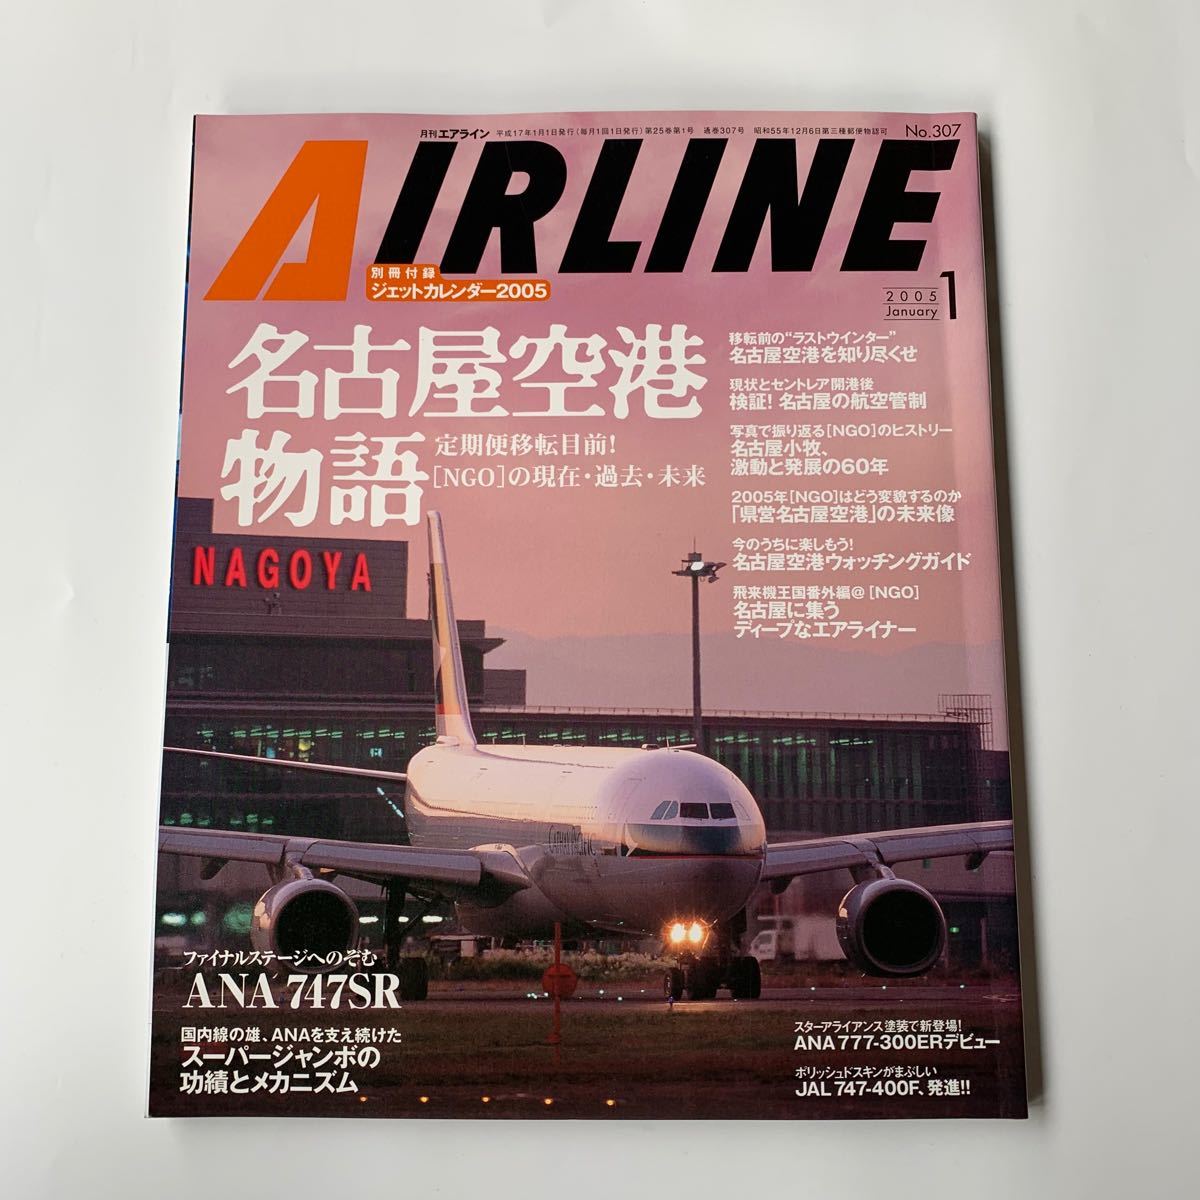 月刊エアライン 2005年 1月号 名古屋空港物語 ANA747SR 付録無し